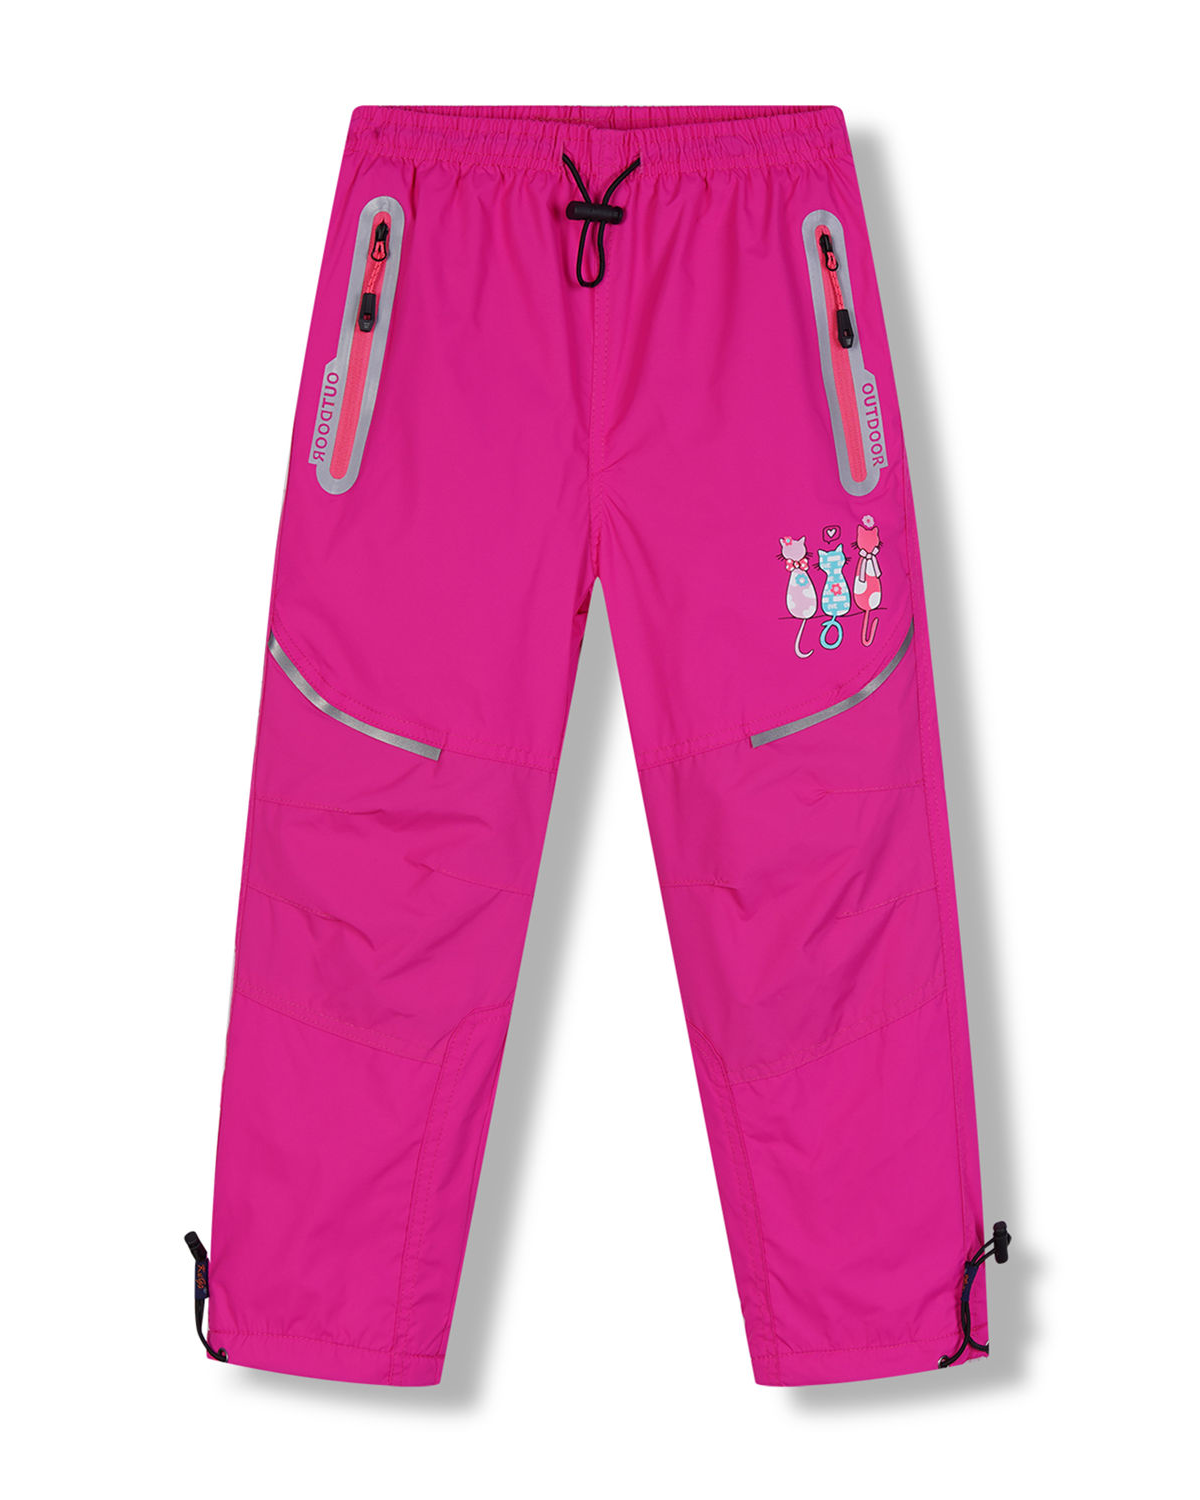 Dívčí šusťákové kalhoty, zateplené - KUGO DK8233, růžová Barva: Růžová, Velikost: 116